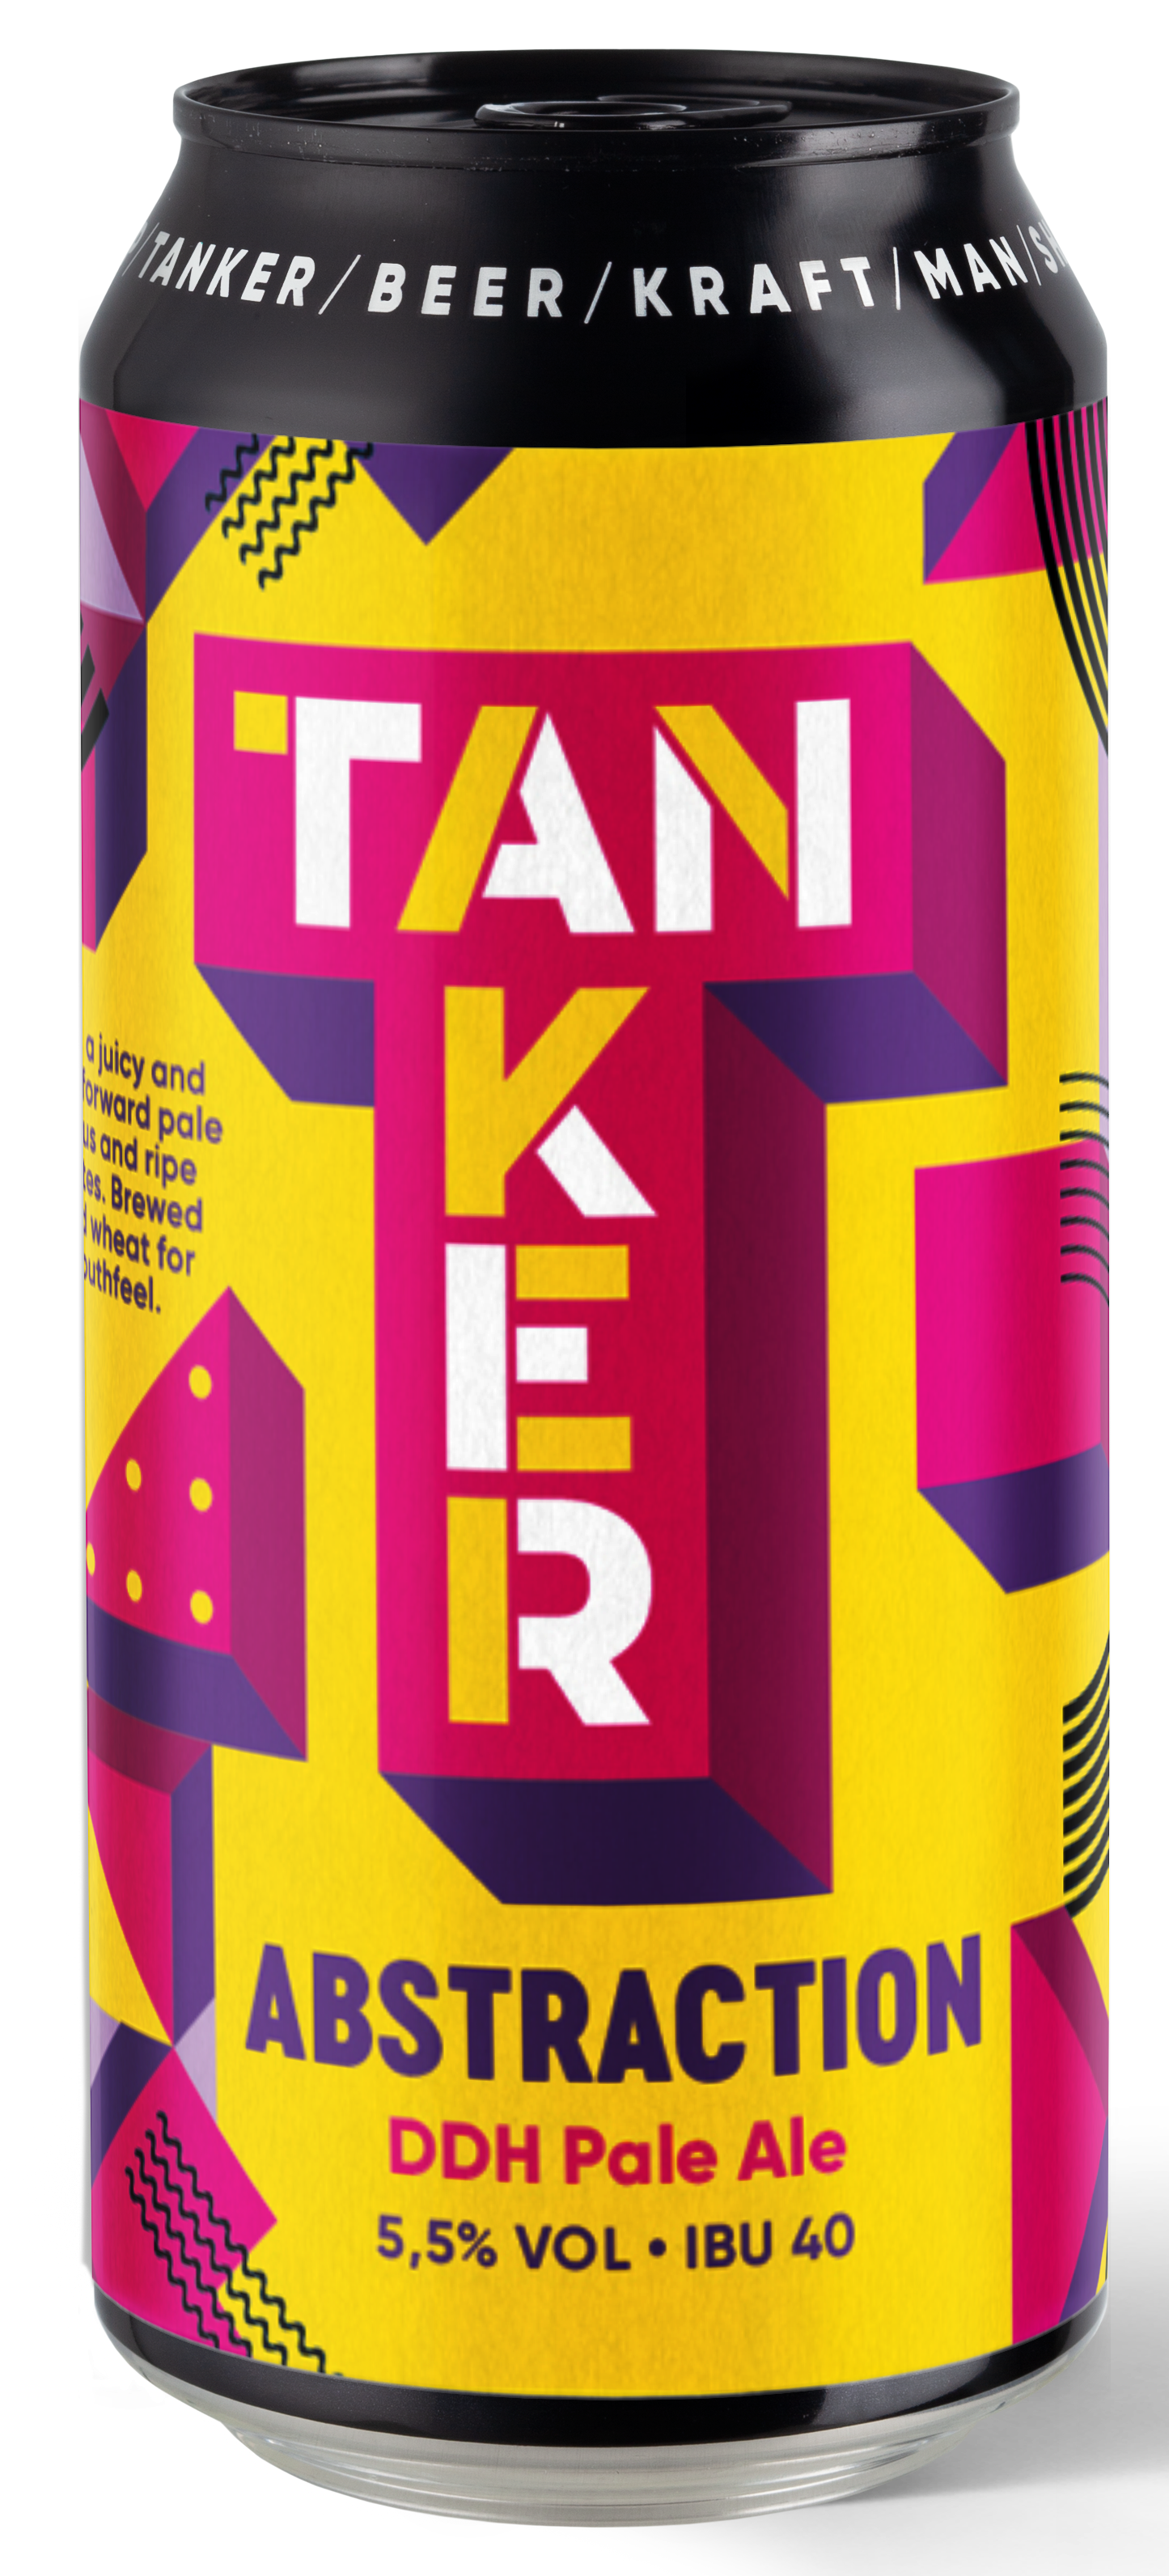 Produktbild von Tanker Brewery - Abstraction DDH Pale Ale